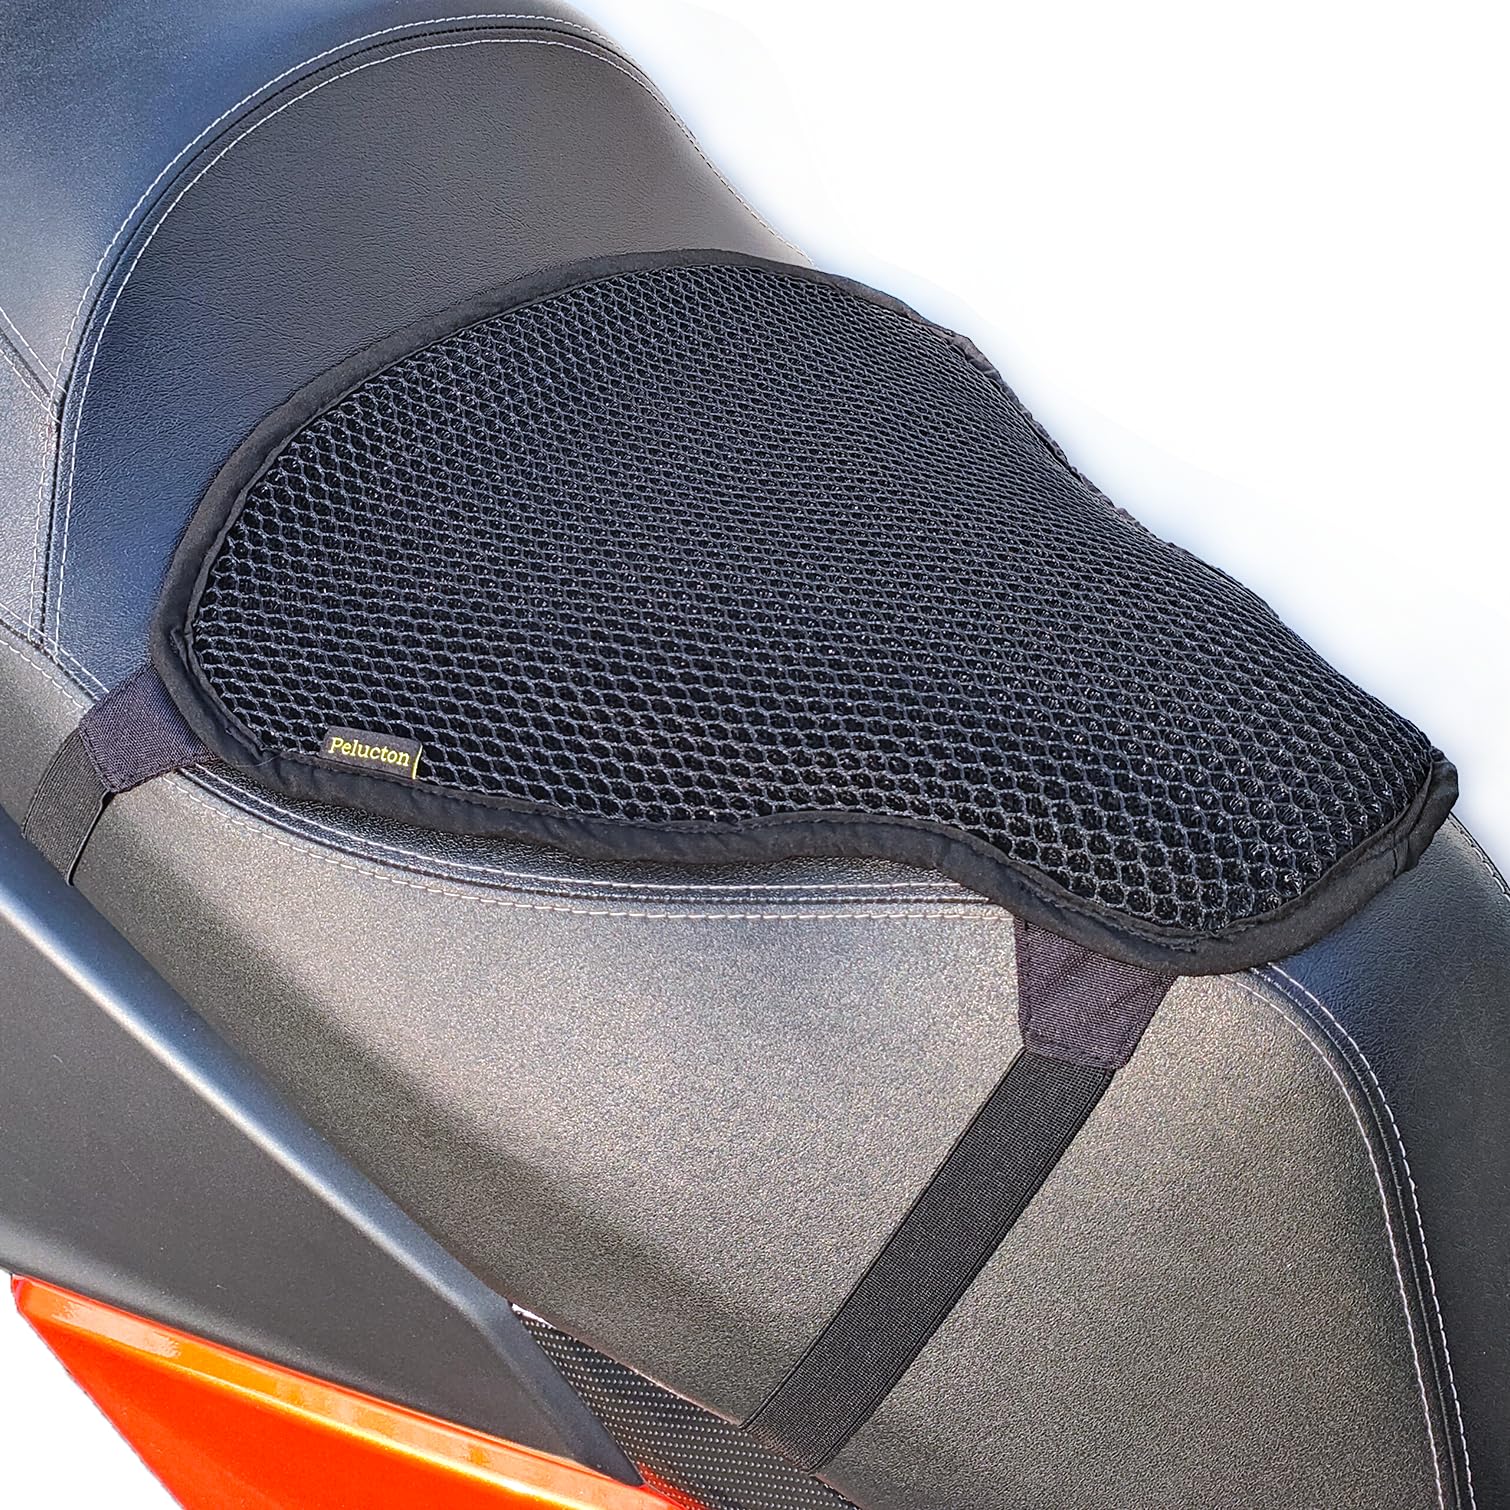 Pelucton Motorrad Roller kühlende Sitzbezug für Sonnenschutz, Btmungsaktives Mesh Motorroller Sitzkissen, Universal Antirutsch Moped Sattelschoner von Pelucton